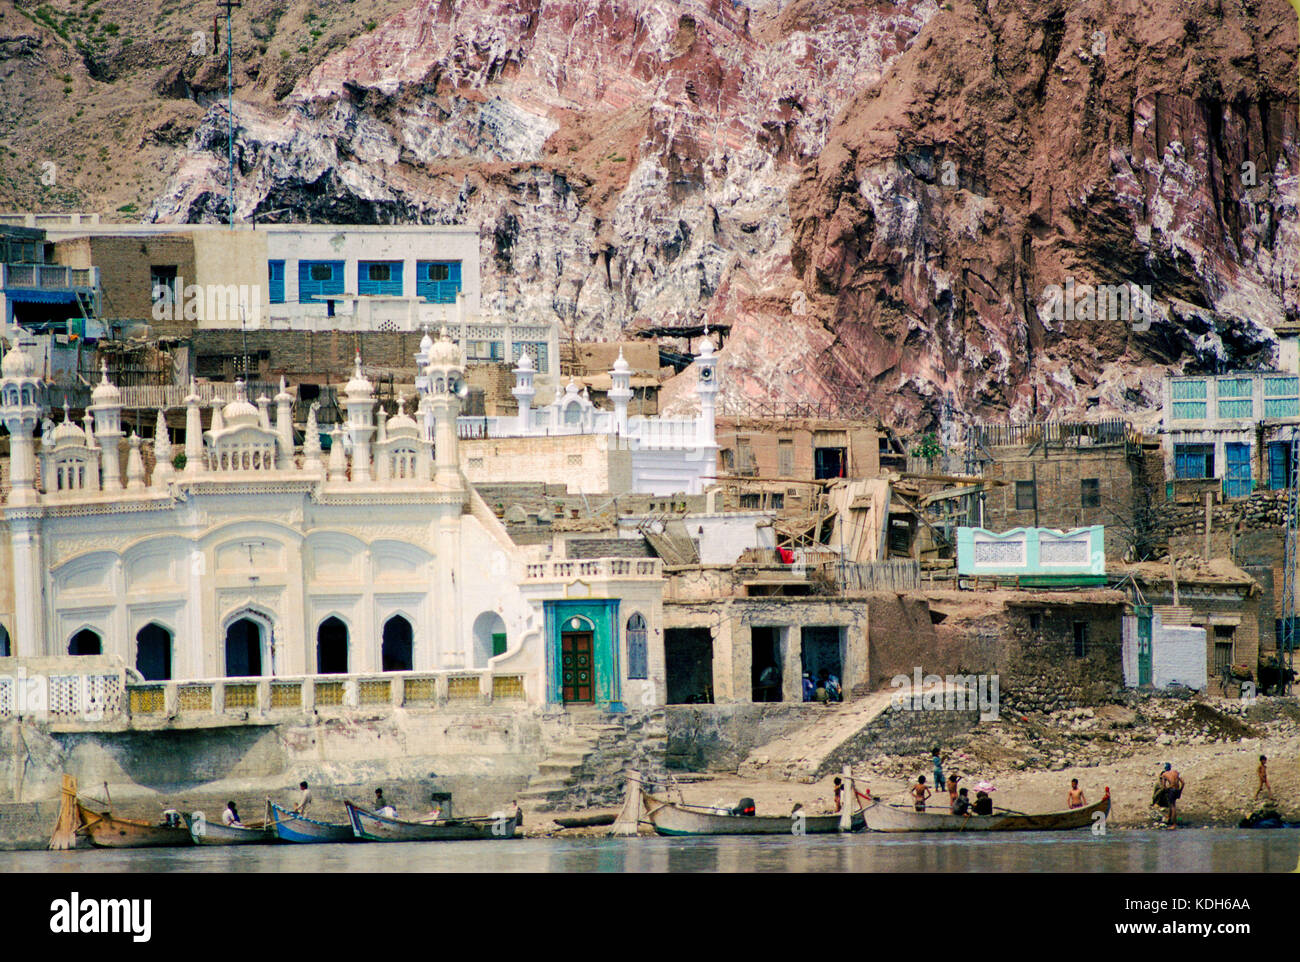 Les bâtiments du village se nichent dans les murs escarpés de l'Indus river valley près de Kalabagh, Punjab, Pakistan. Banque D'Images